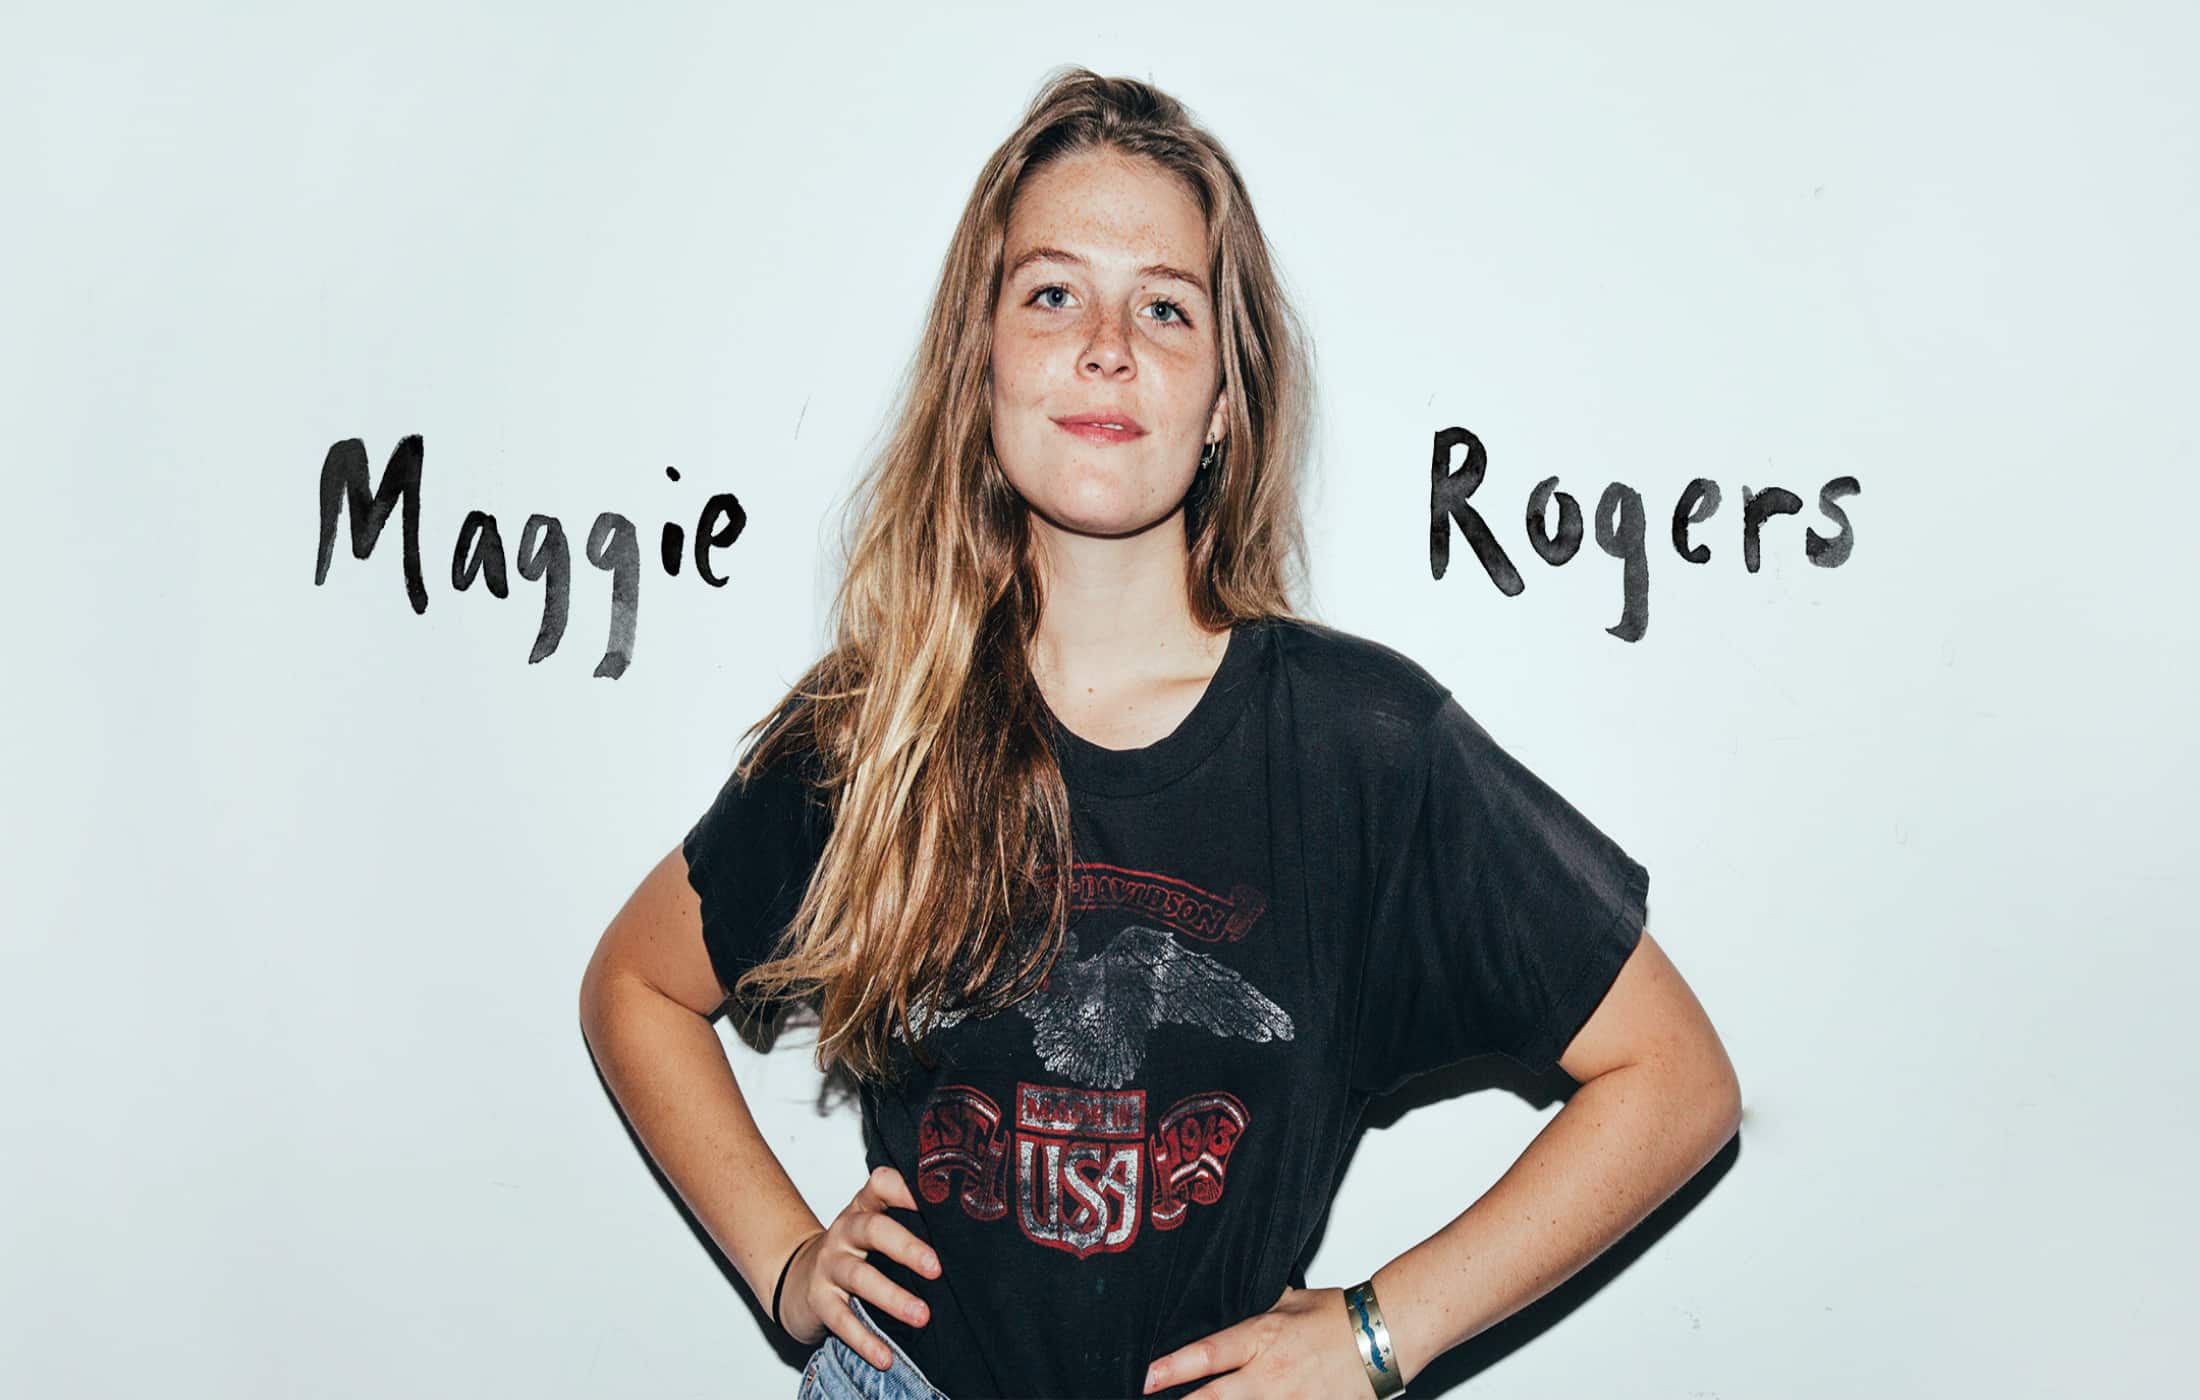 Maggie Rogers bio net worth 2022, age, height, weight, wiki, boyfriend